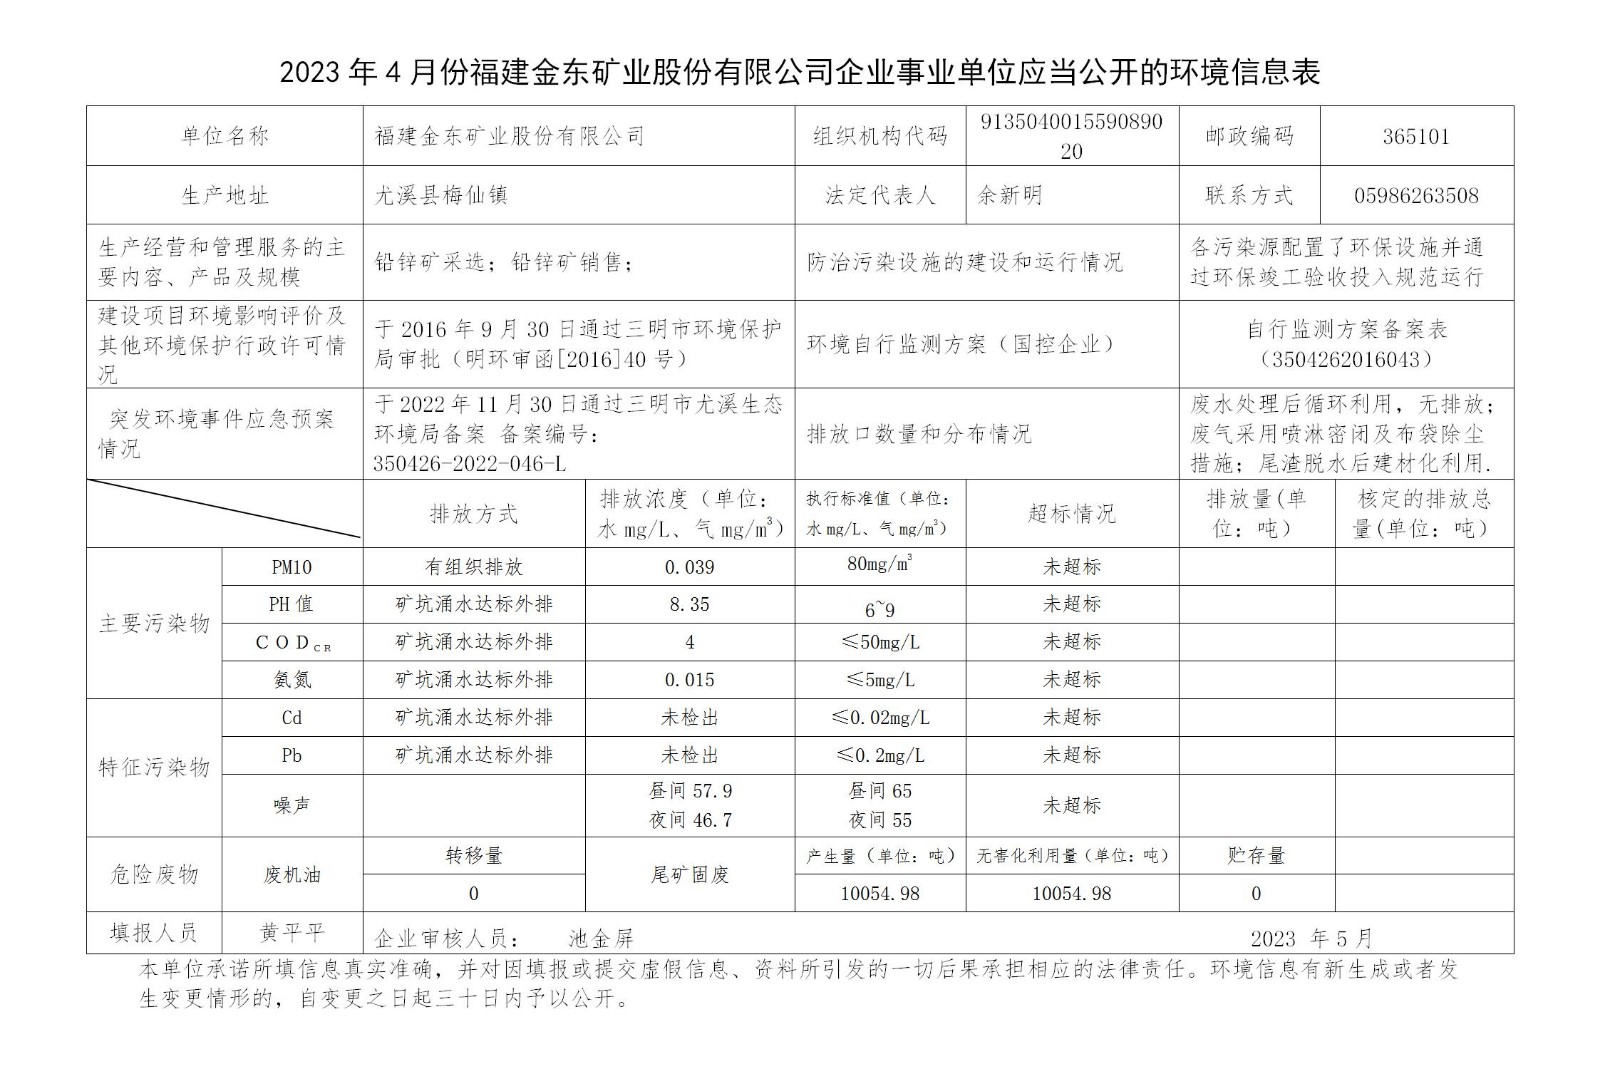 2023年4月份亚娱平台企业事业单位应当公开的环境信息表_01.jpg